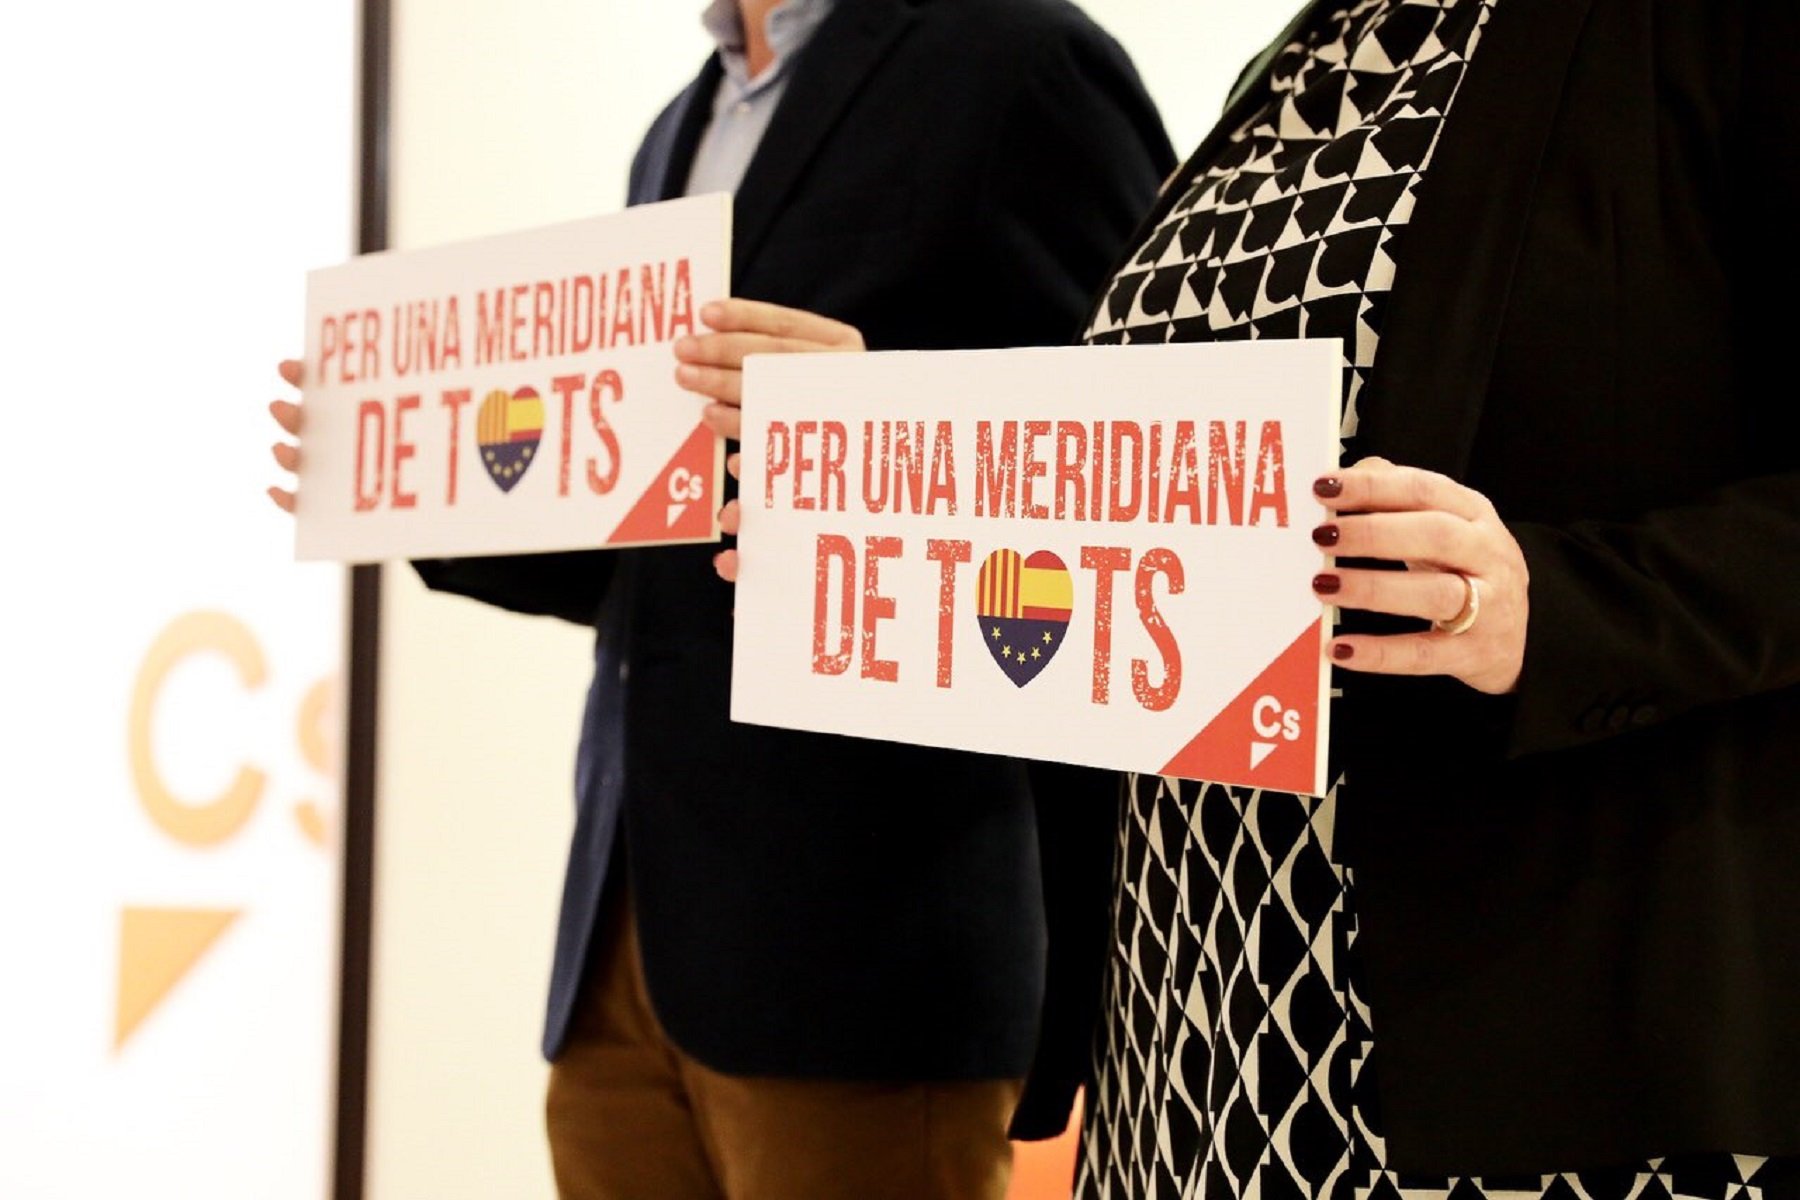 Ciutadans torna a apuntar al tall de la Meridiana: ara amb cartells